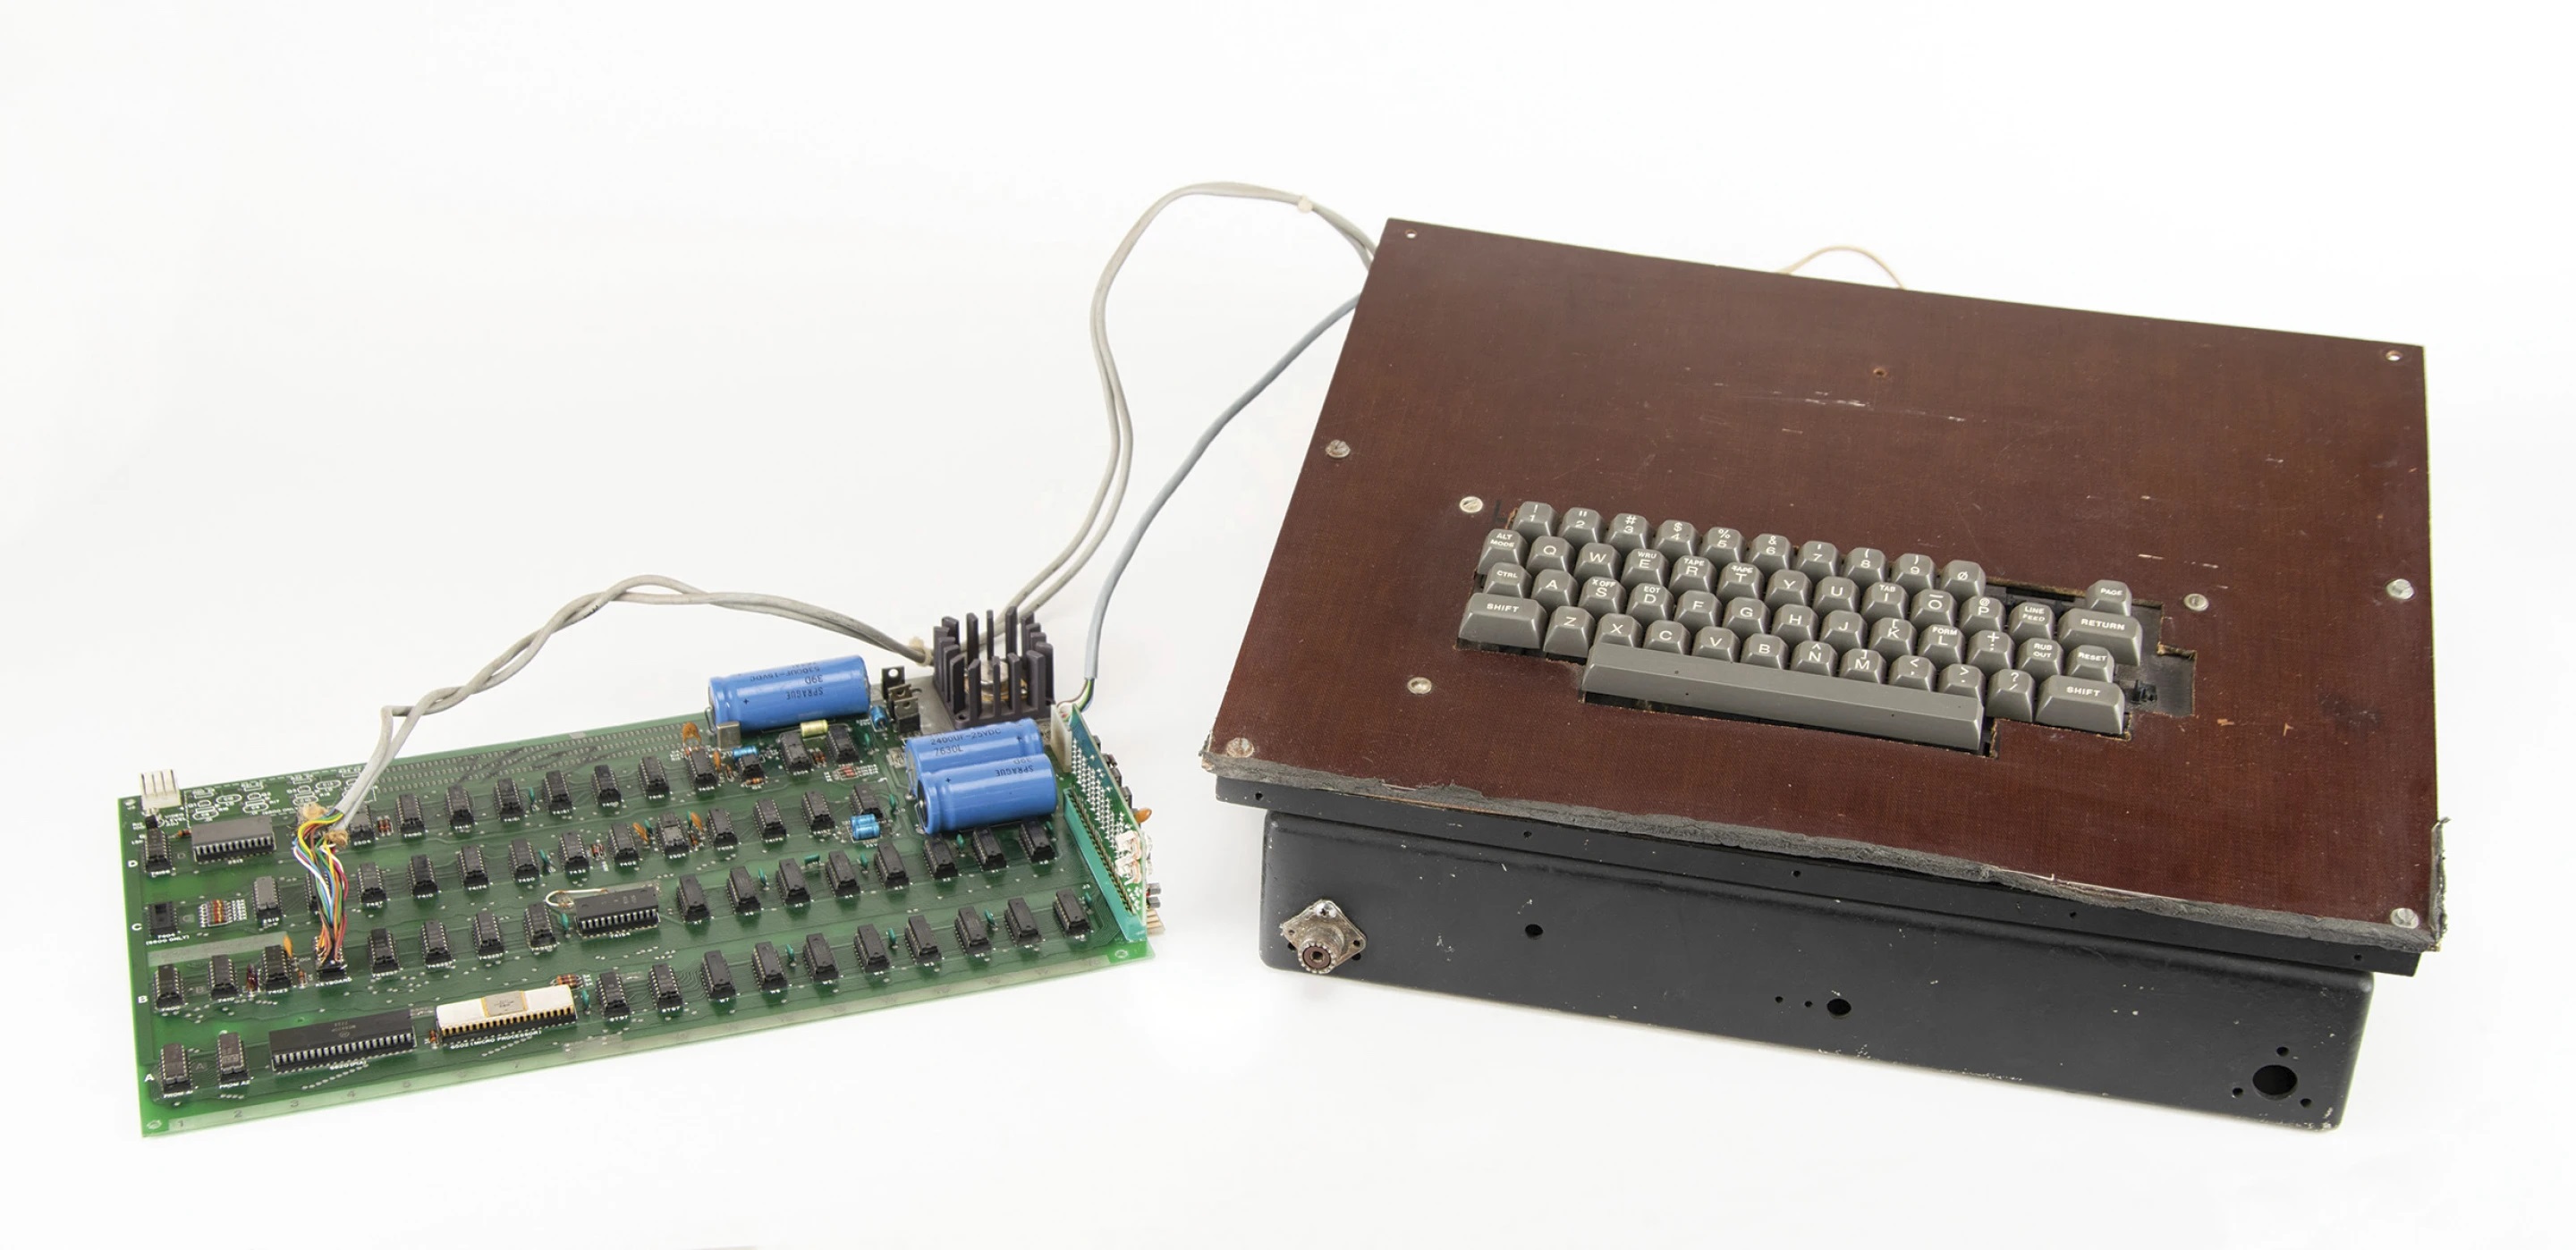 Apples første computer, der udkom i 70'erne, sælges på auktion - det er planen, at den skal sælges for 200.000 dollars.